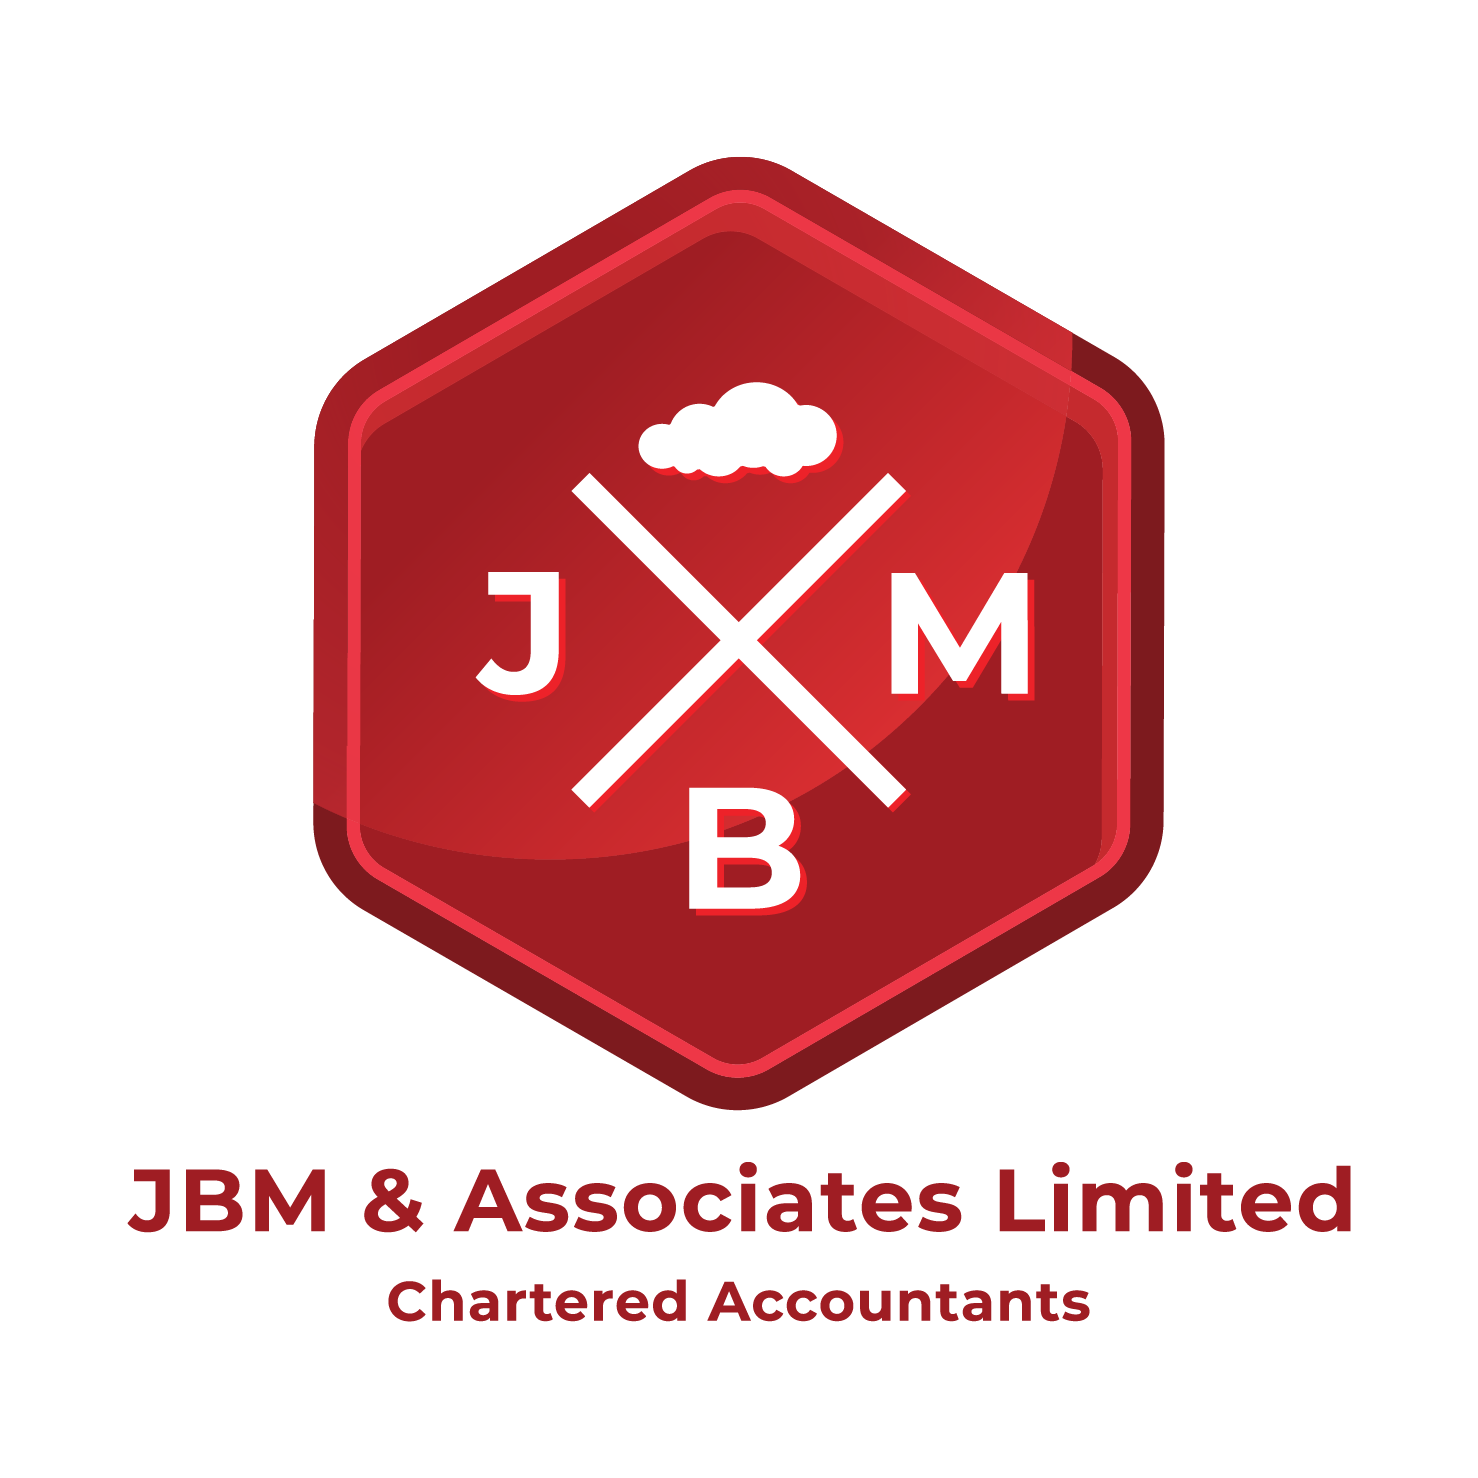 JBM & Associates Limited